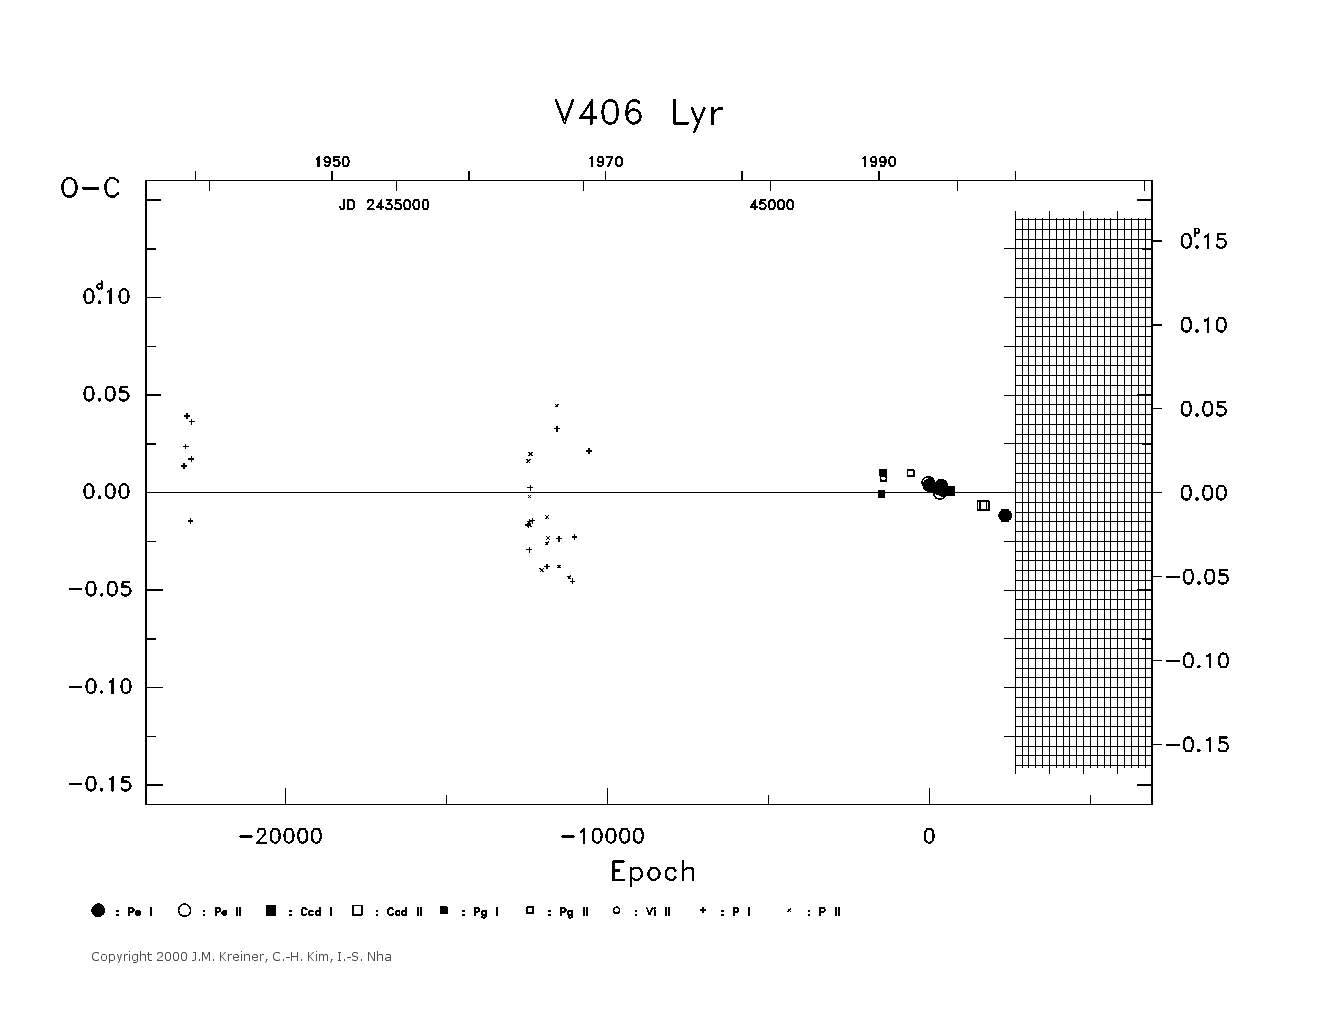 [IMAGE: large V406 LYR O-C diagram]